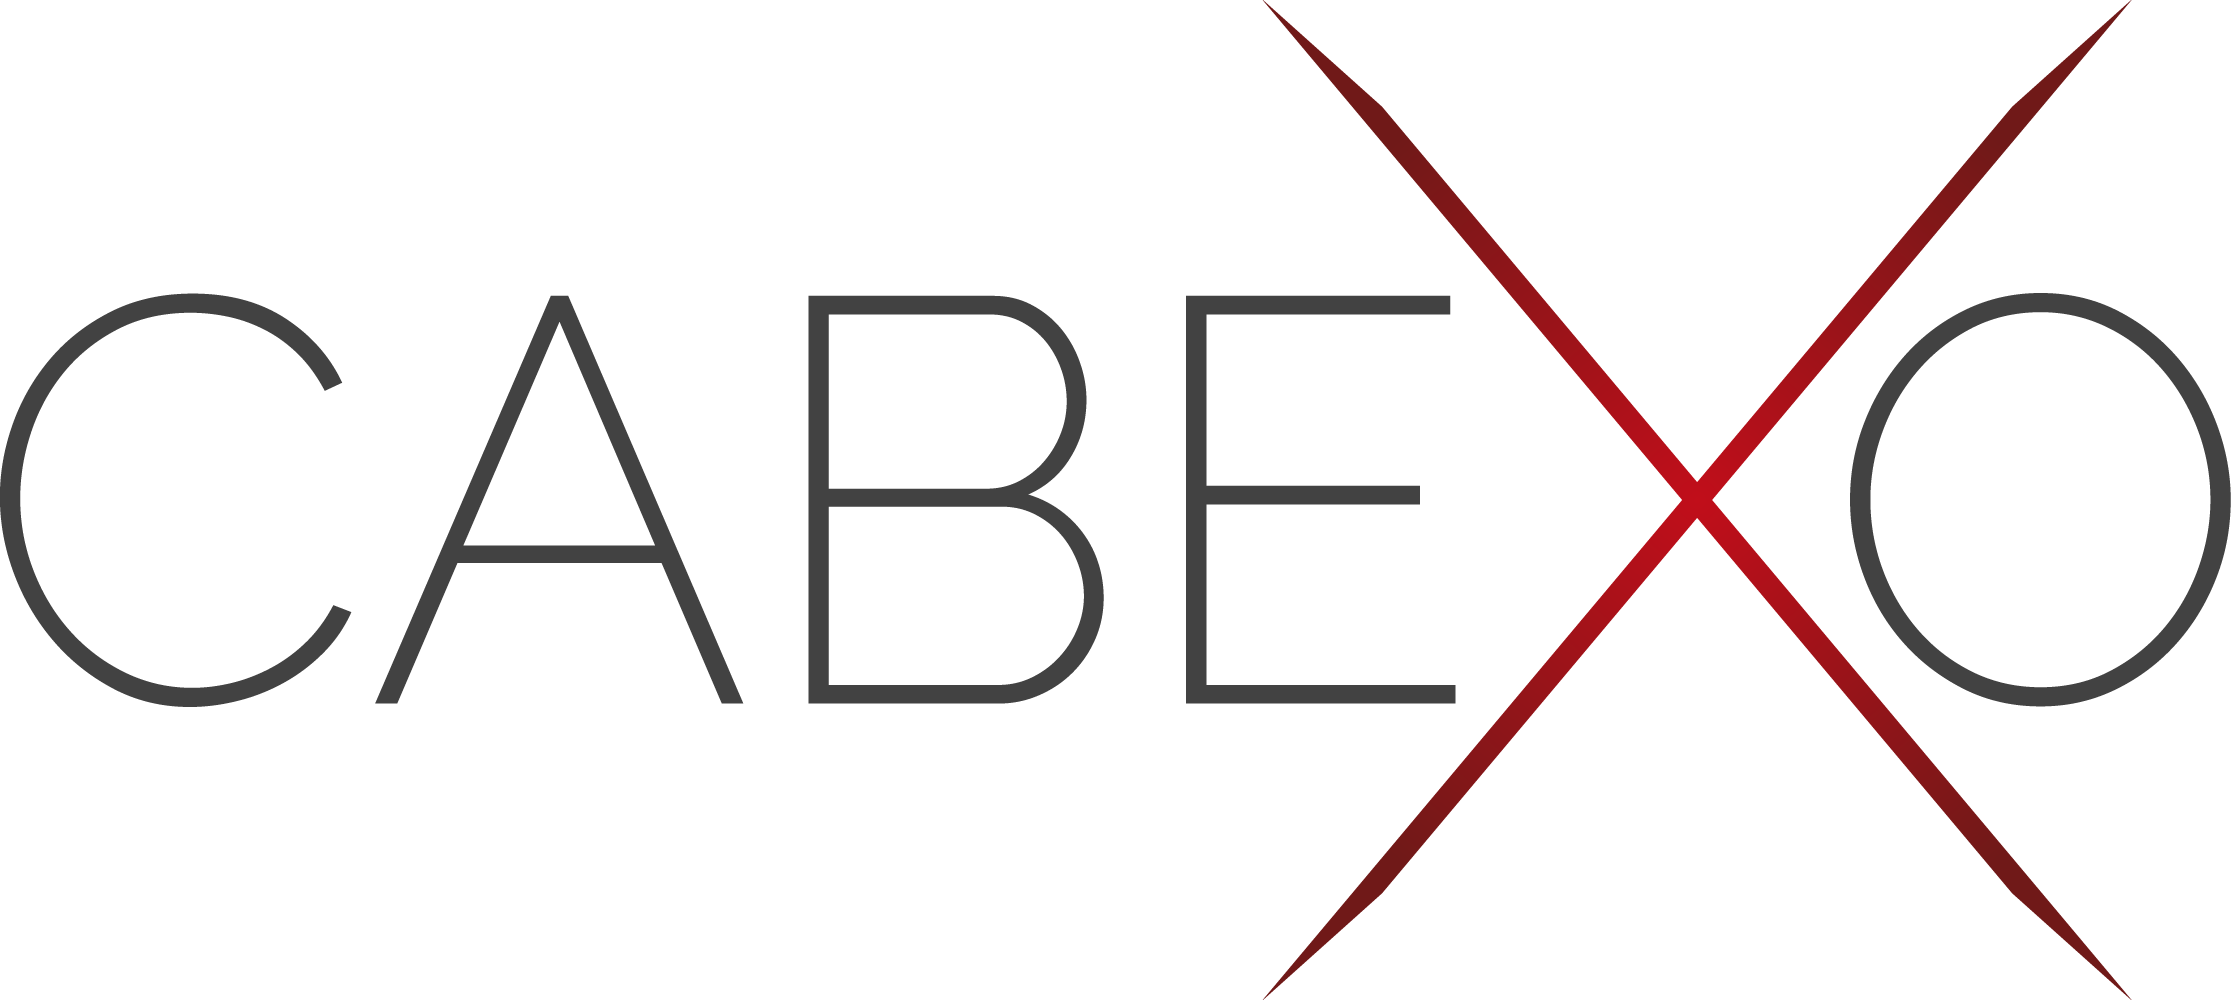 logo-CABEXO